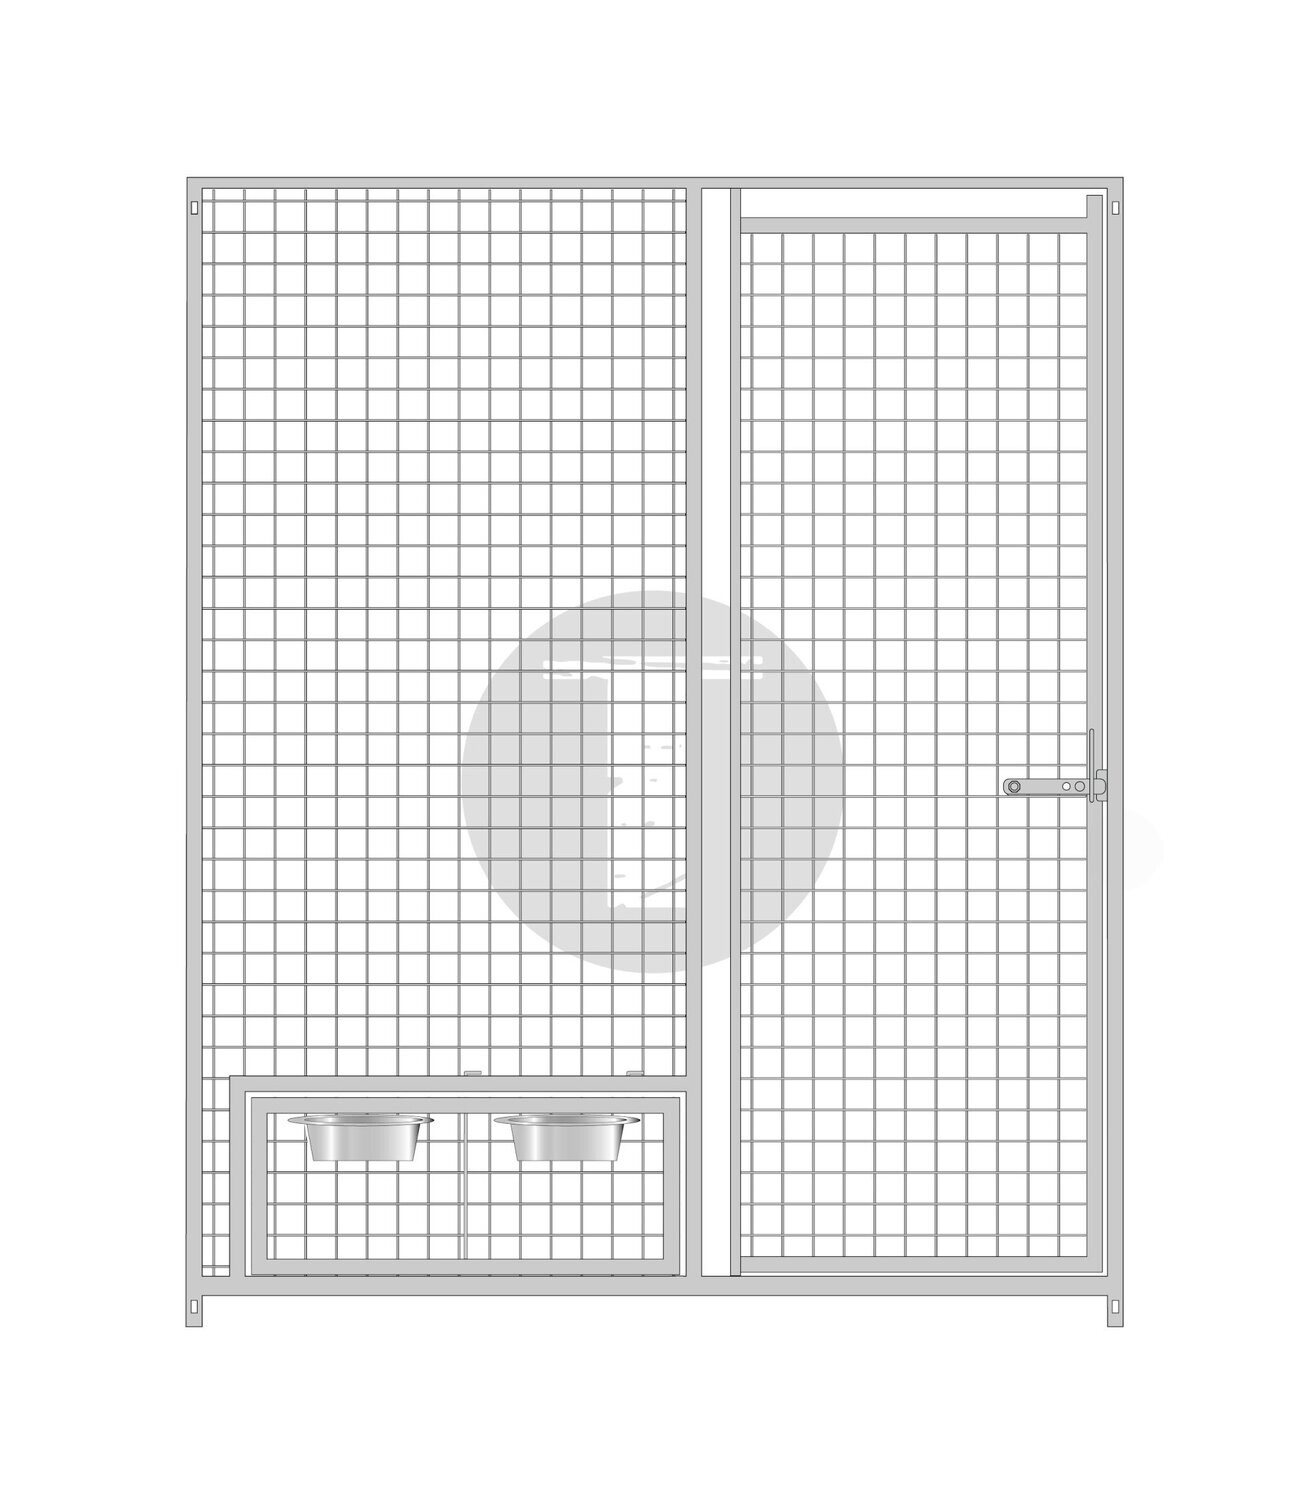 Gitterelement Tür rechts und schwenkbarem Futterset 5 x 5 cm - 184 cm hoch - B-WARE, Länge: 150cm